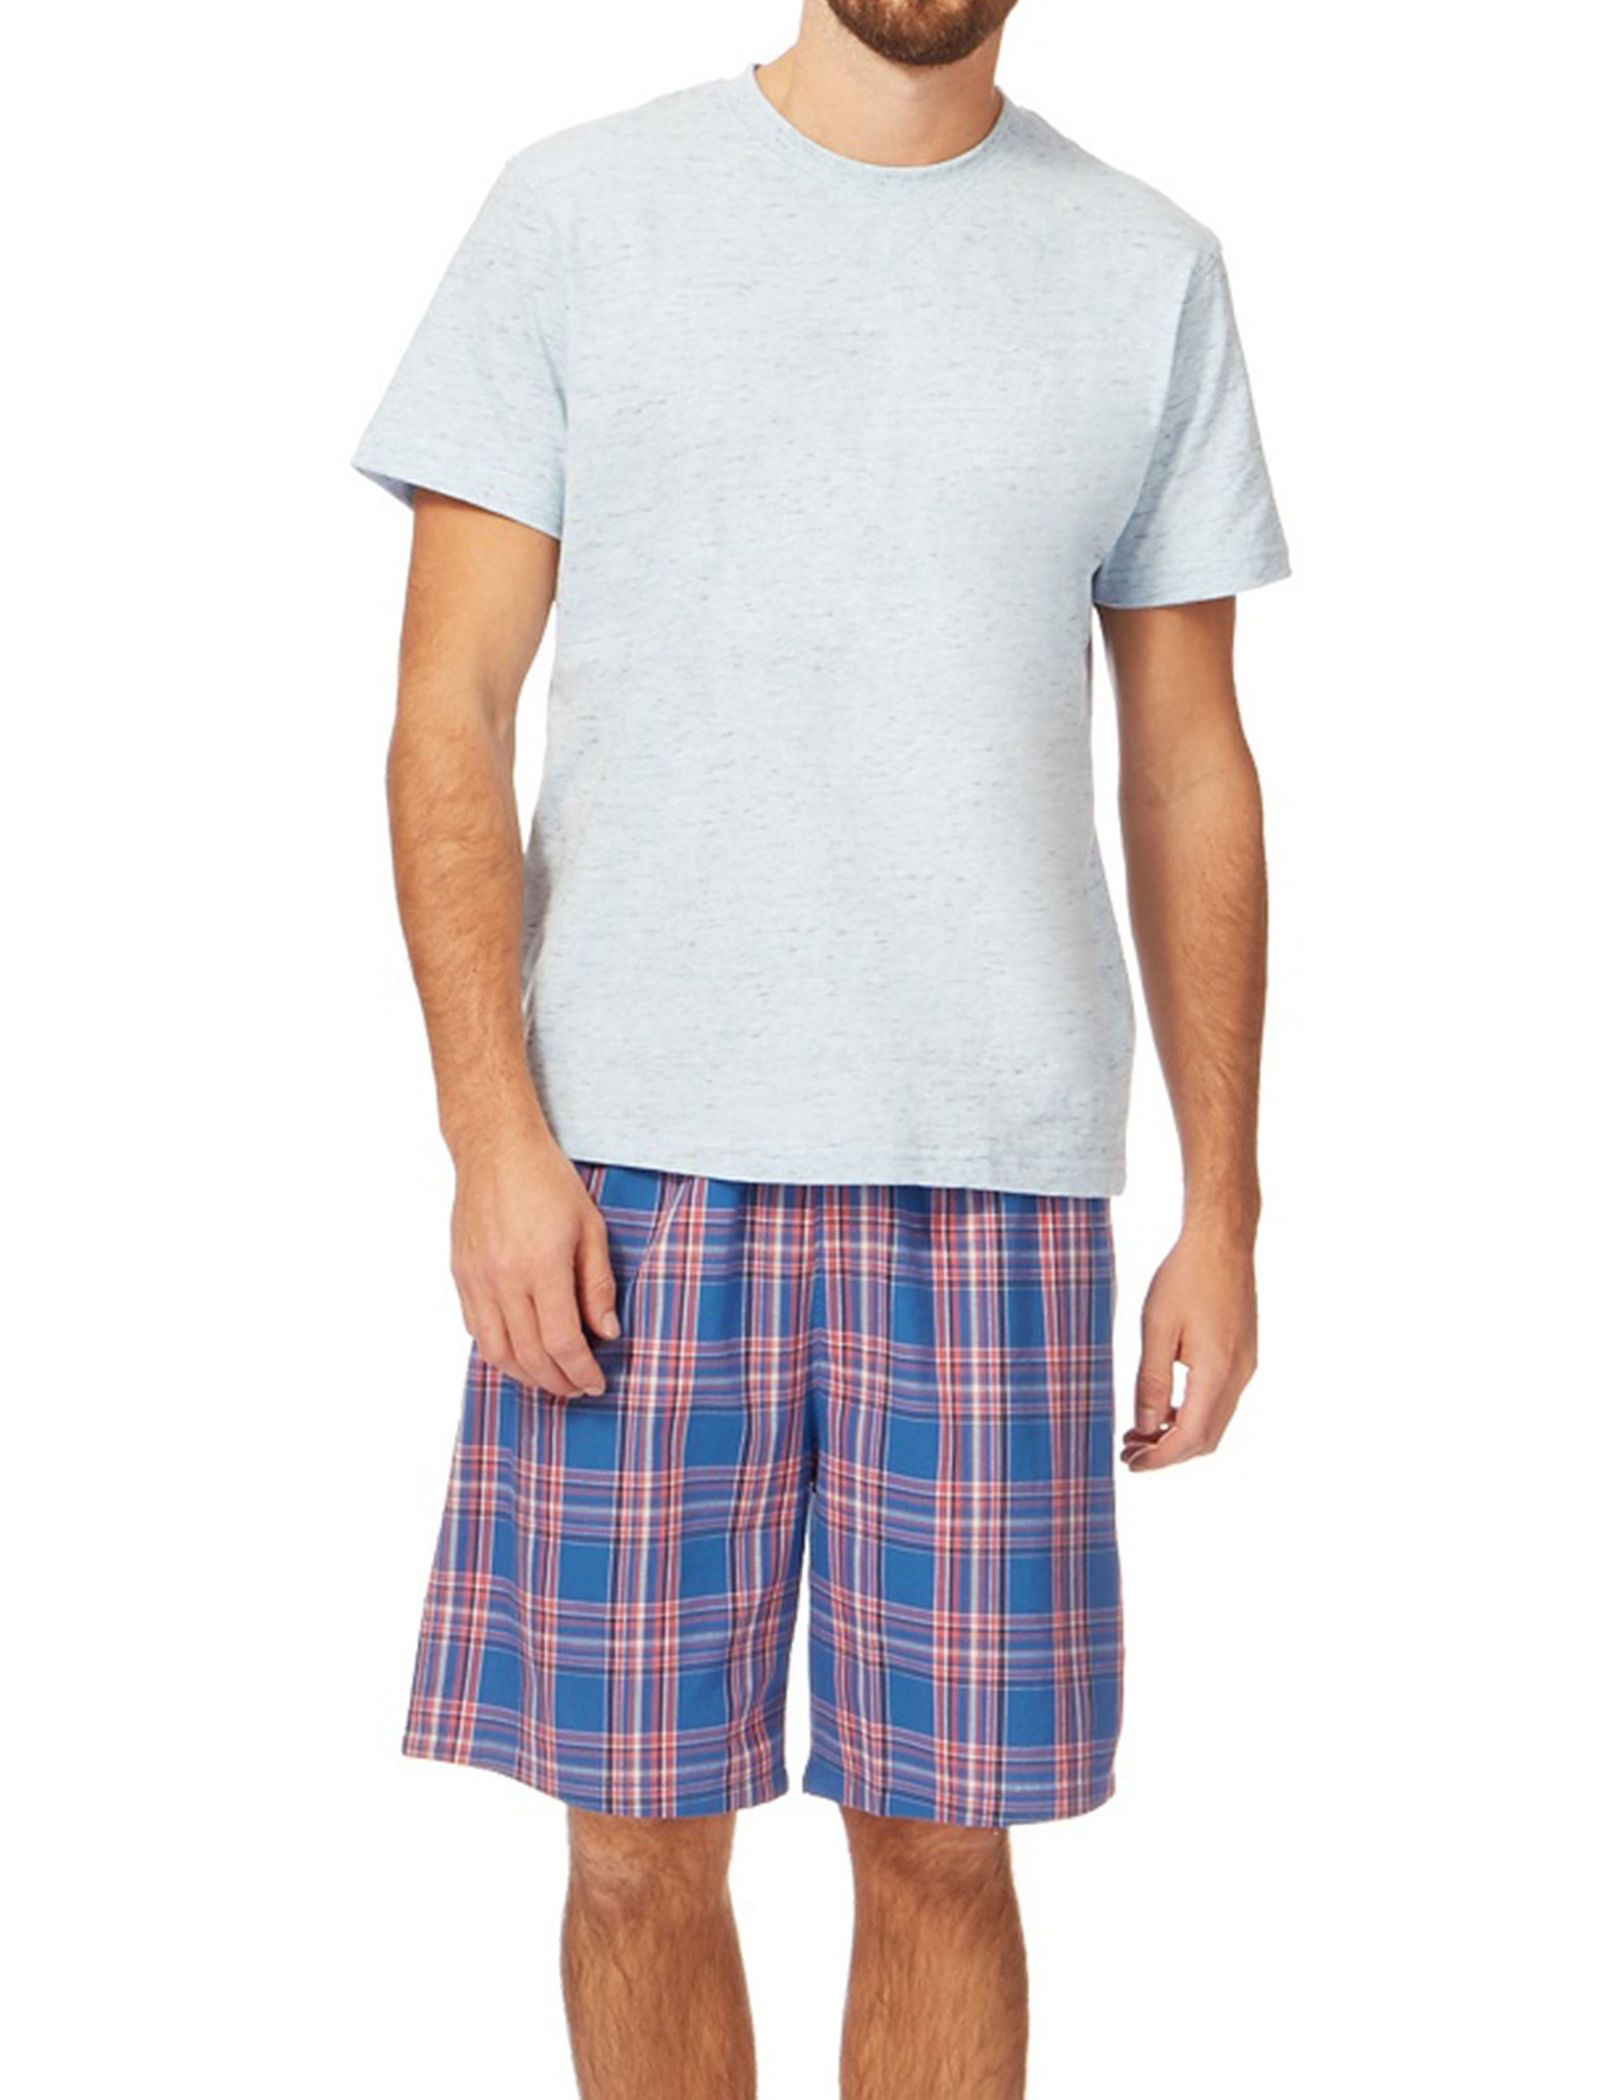 تی شرت و شلوارک راحتی نخی مردانه - منتری - طوسي و آبي - 2